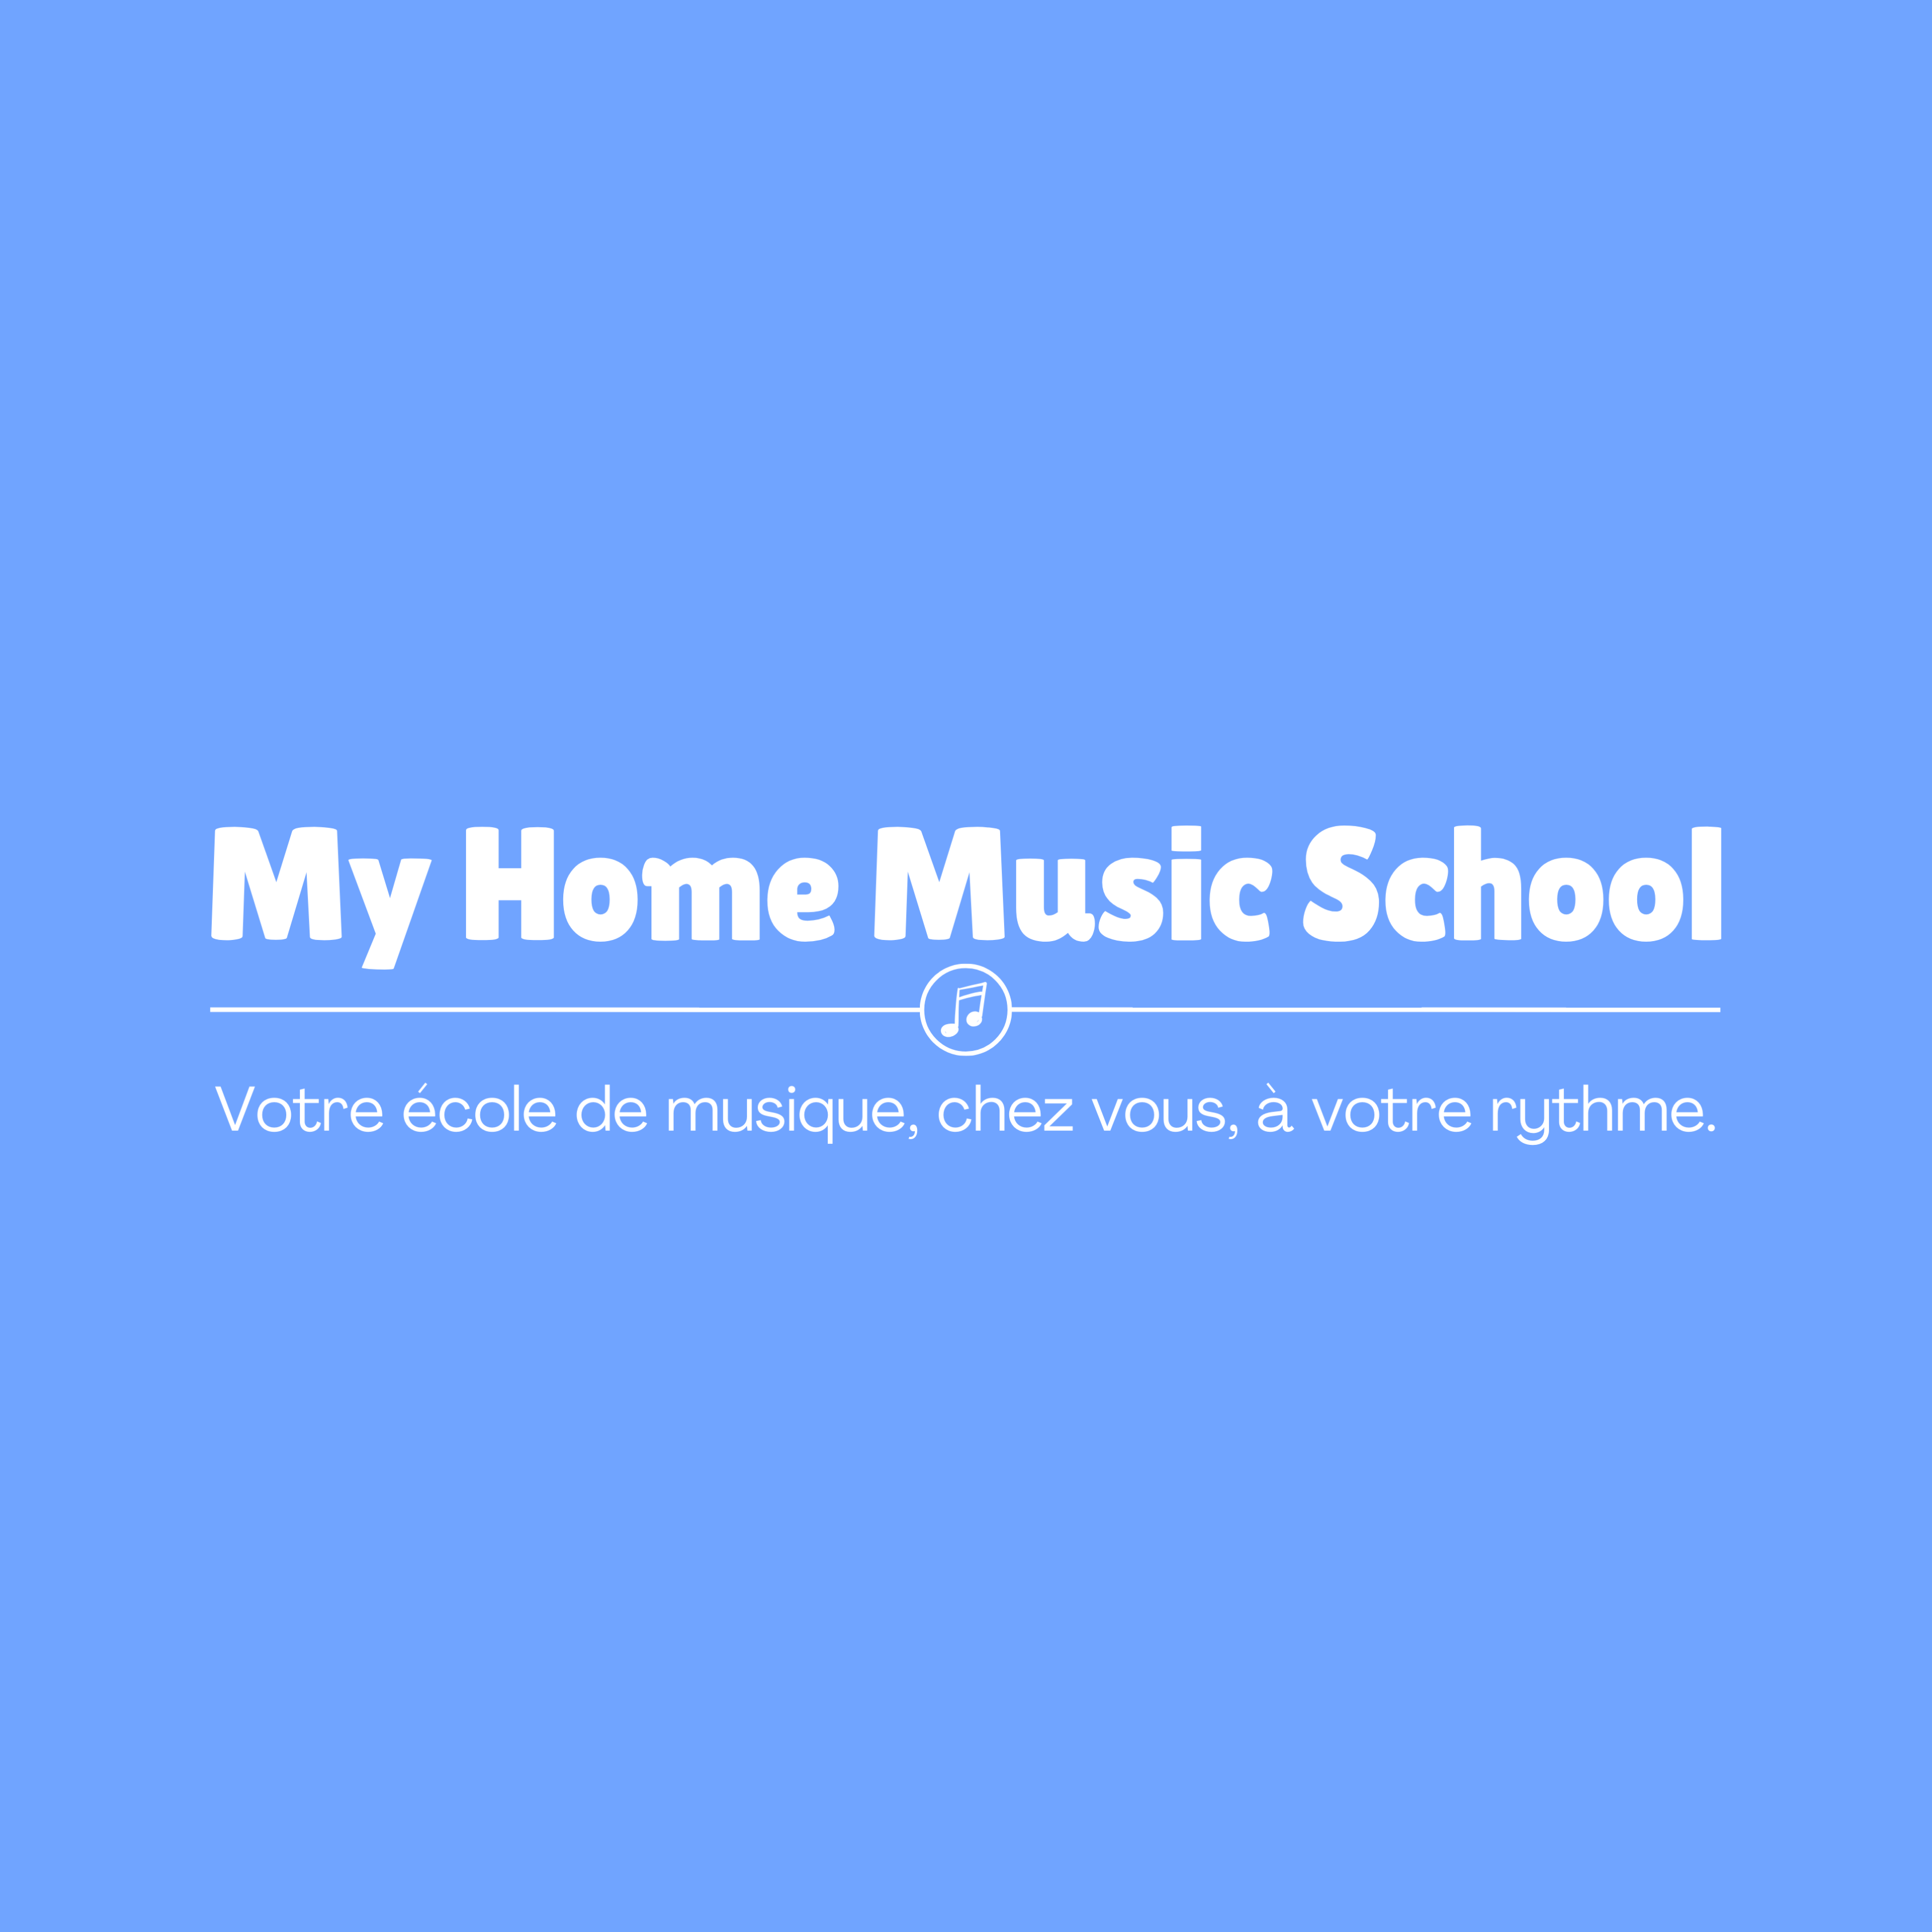 My Home Music School, votre école de musique, chez vous, à votre rythme Cours de Musique à Domicile Seine-et-Marne